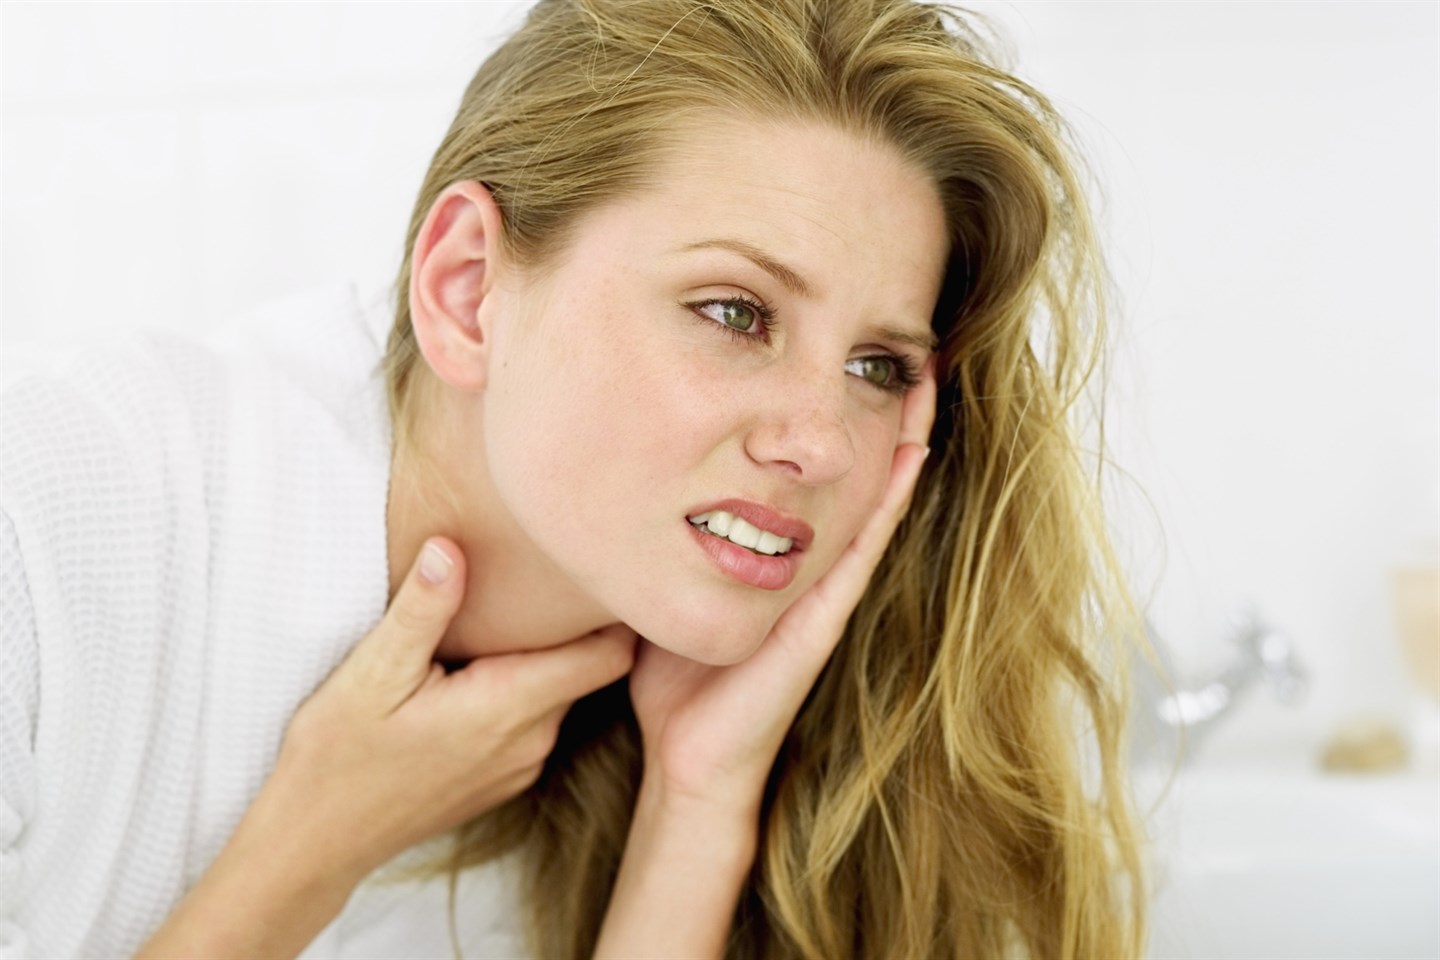 Có những biện pháp tự chăm sóc tại nhà nào giúp giảm đau họng và tai?
